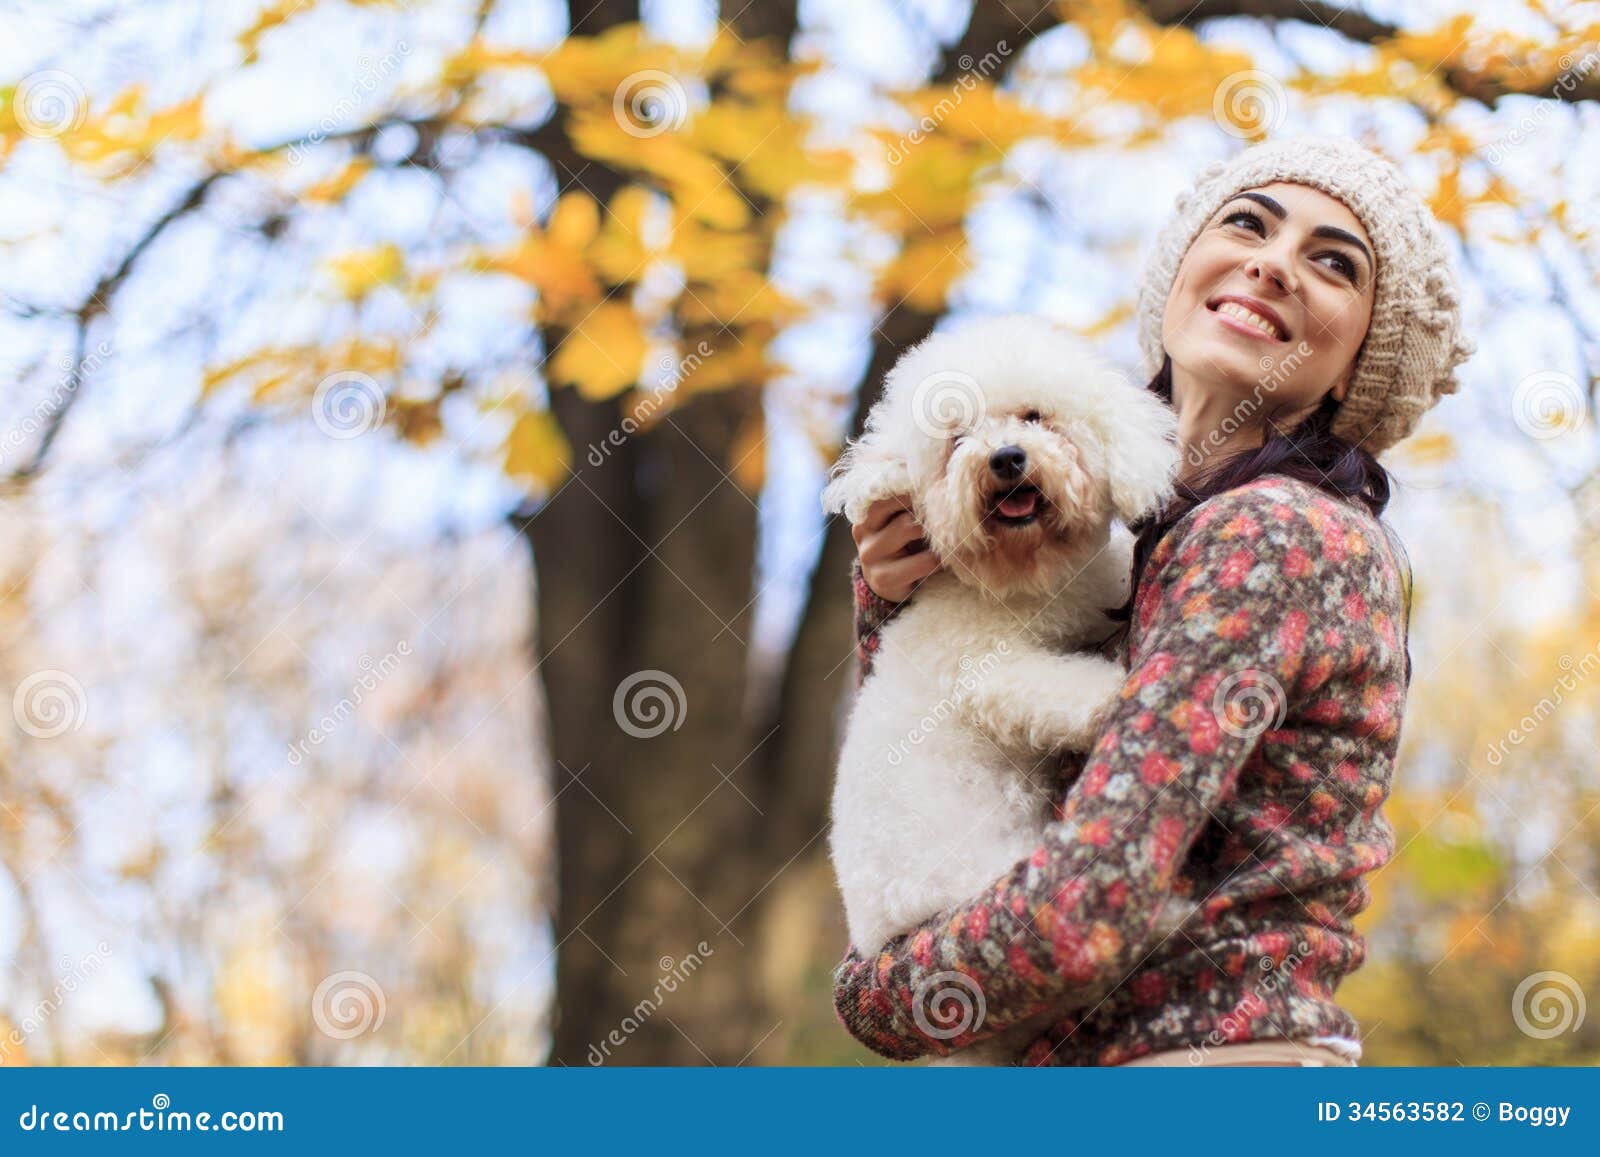 少妇走与狗在森林里 库存照片. 图片 包括有 拉布拉多, 人们, 逗人喜爱, 生活方式, 草坪, 公园 - 103773100